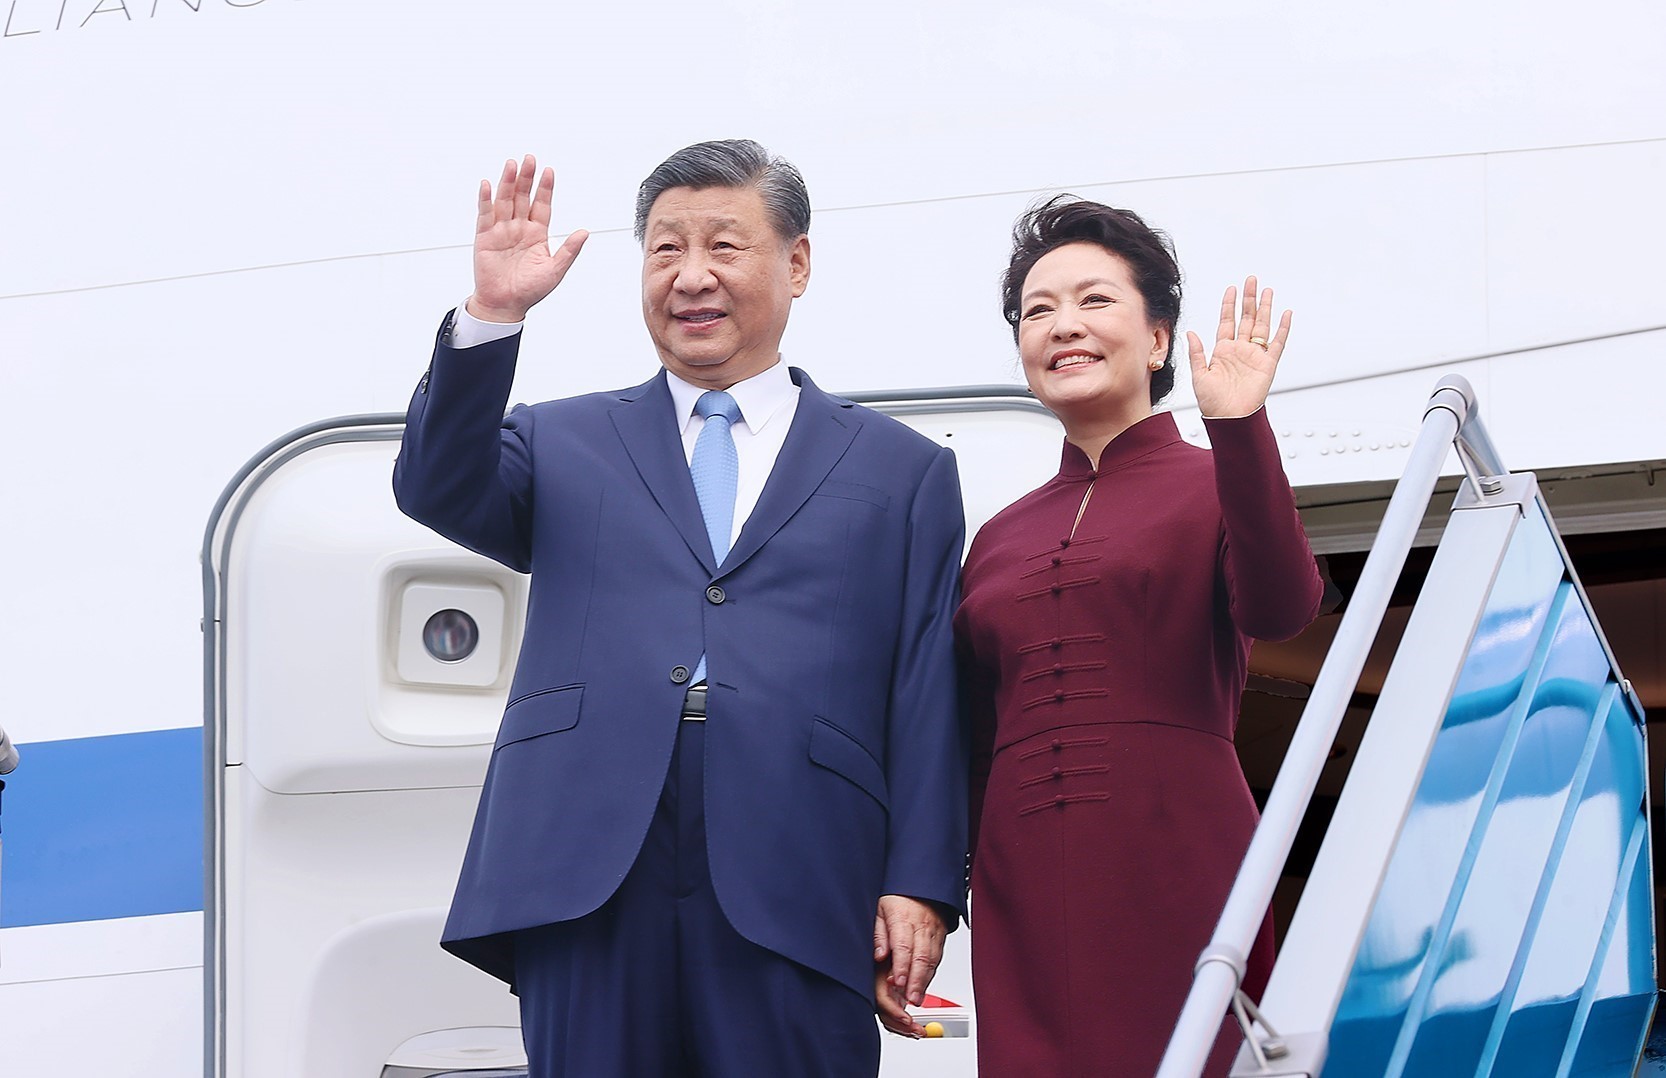 Tổng Bí thư, Chủ tịch nước Trung Quốc Tập Cận Bình đến Hà Nội, bắt đầu chuyến thăm Việt Nam - Ảnh 1.